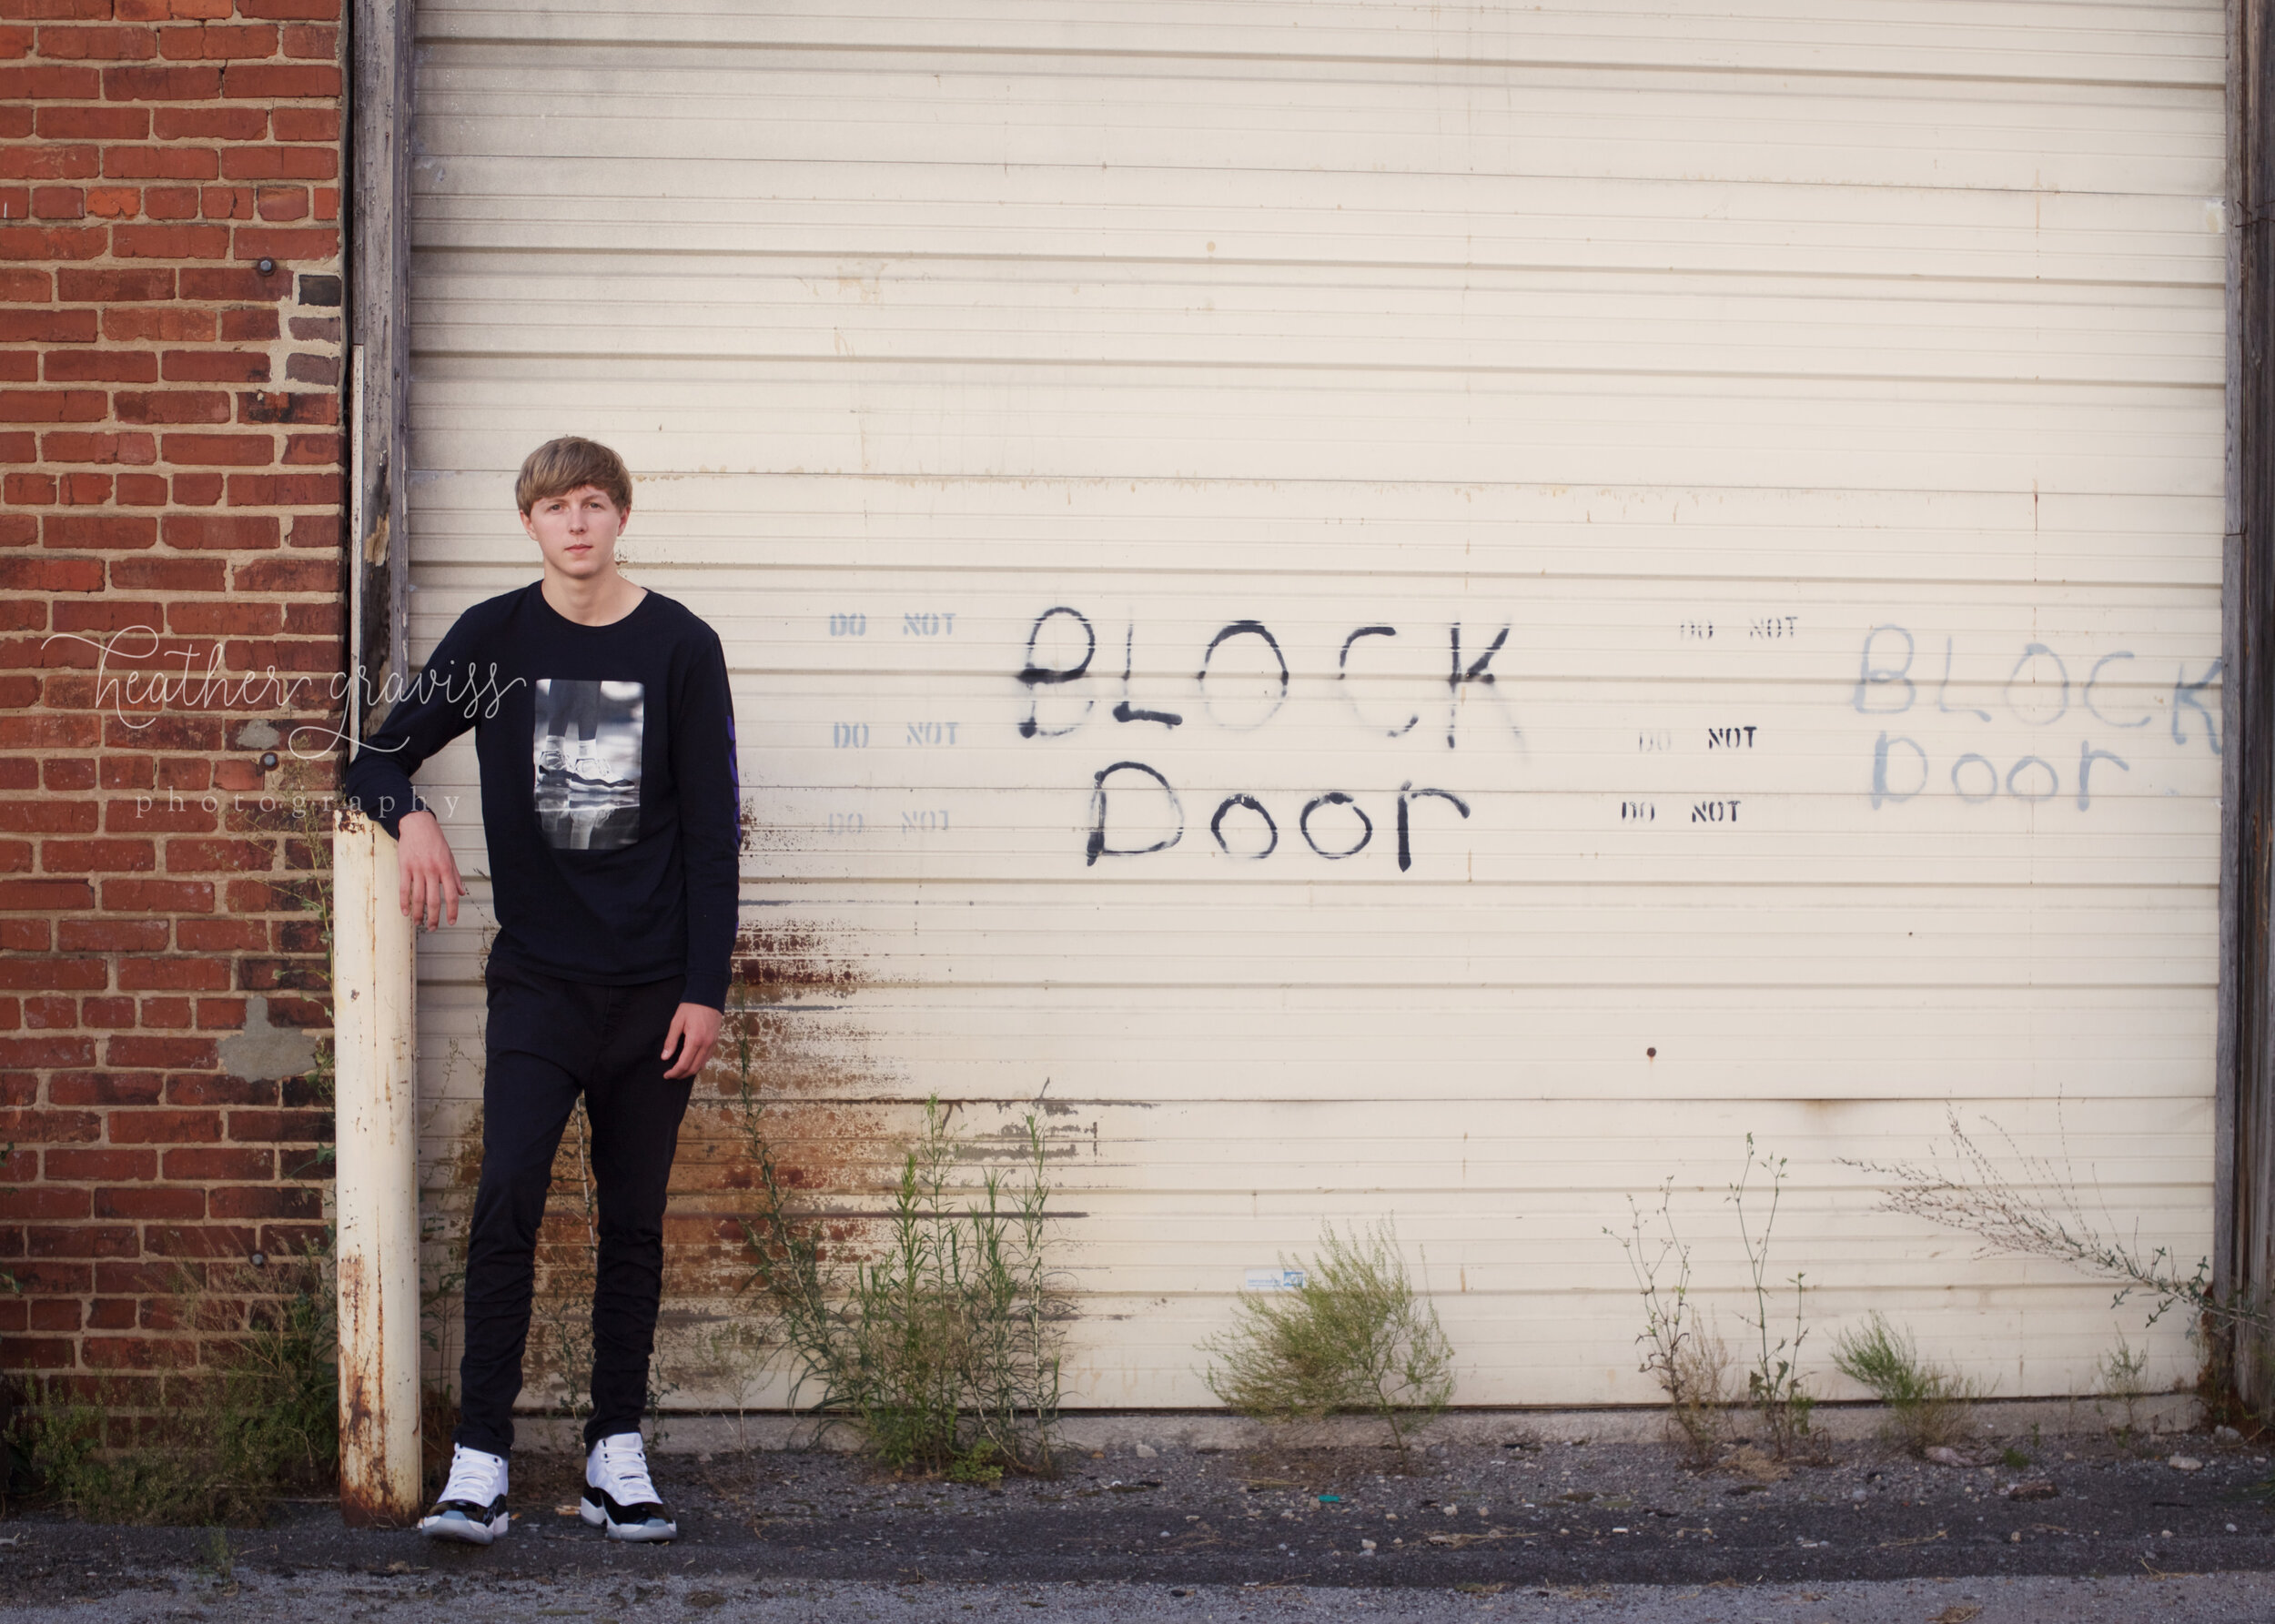 do-not-block-door.jpg